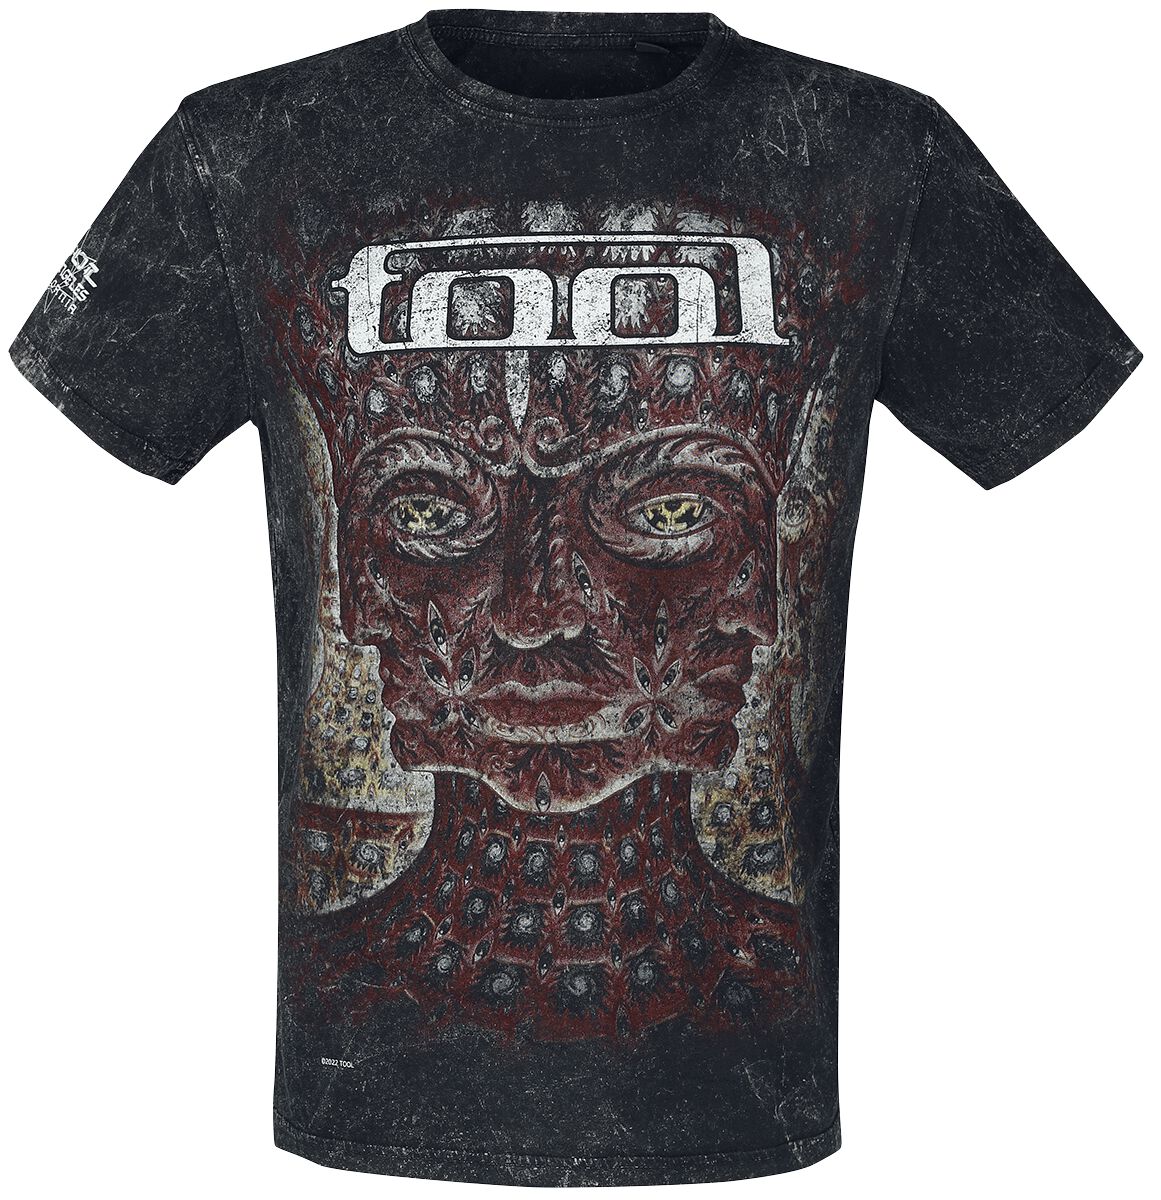 Tool T-Shirt - Lateralus - S bis 3XL - für Männer - Größe XL - schwarz  - Lizenziertes Merchandise!